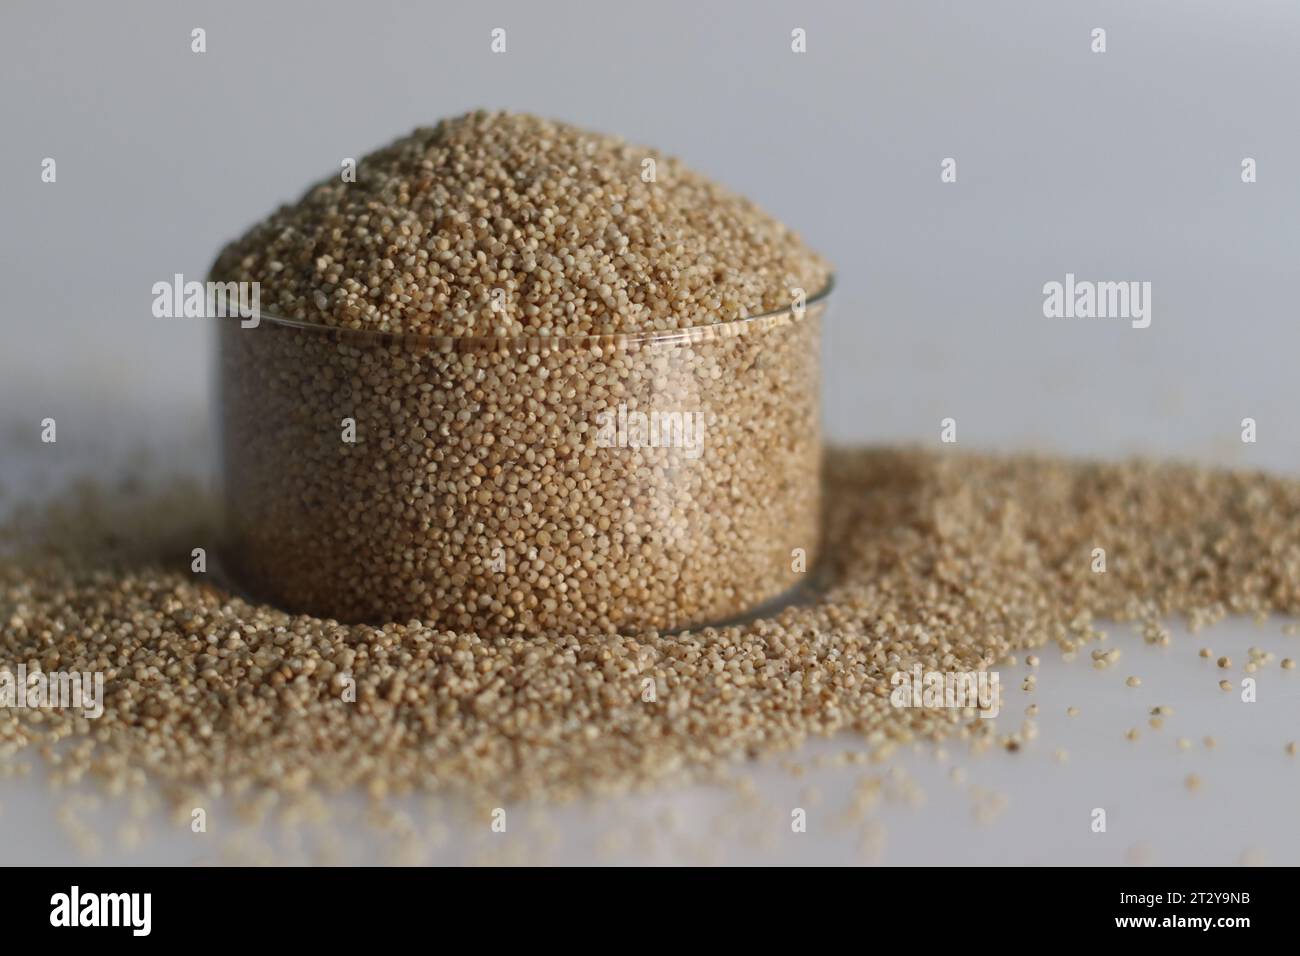 Gros plan de millet de banyard, un grain sain, dans un bol en verre rempli à bord, pour mettre en valeur les petits grains pâles de forme ronde avec une teinte dorée Banque D'Images